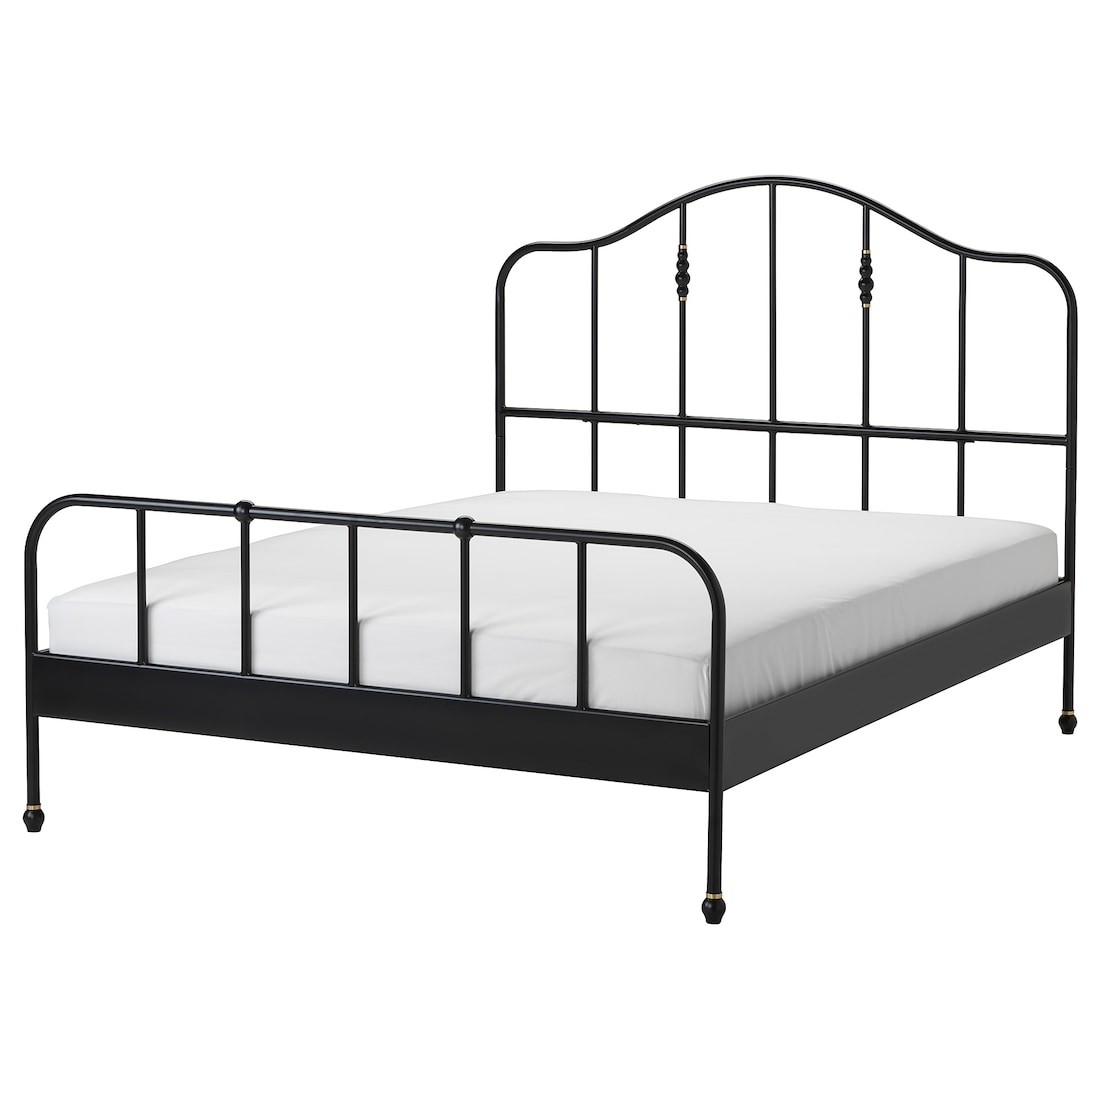 SAGSTUA САГСТУА Ліжко двоспальне, чорний, 160x200 см